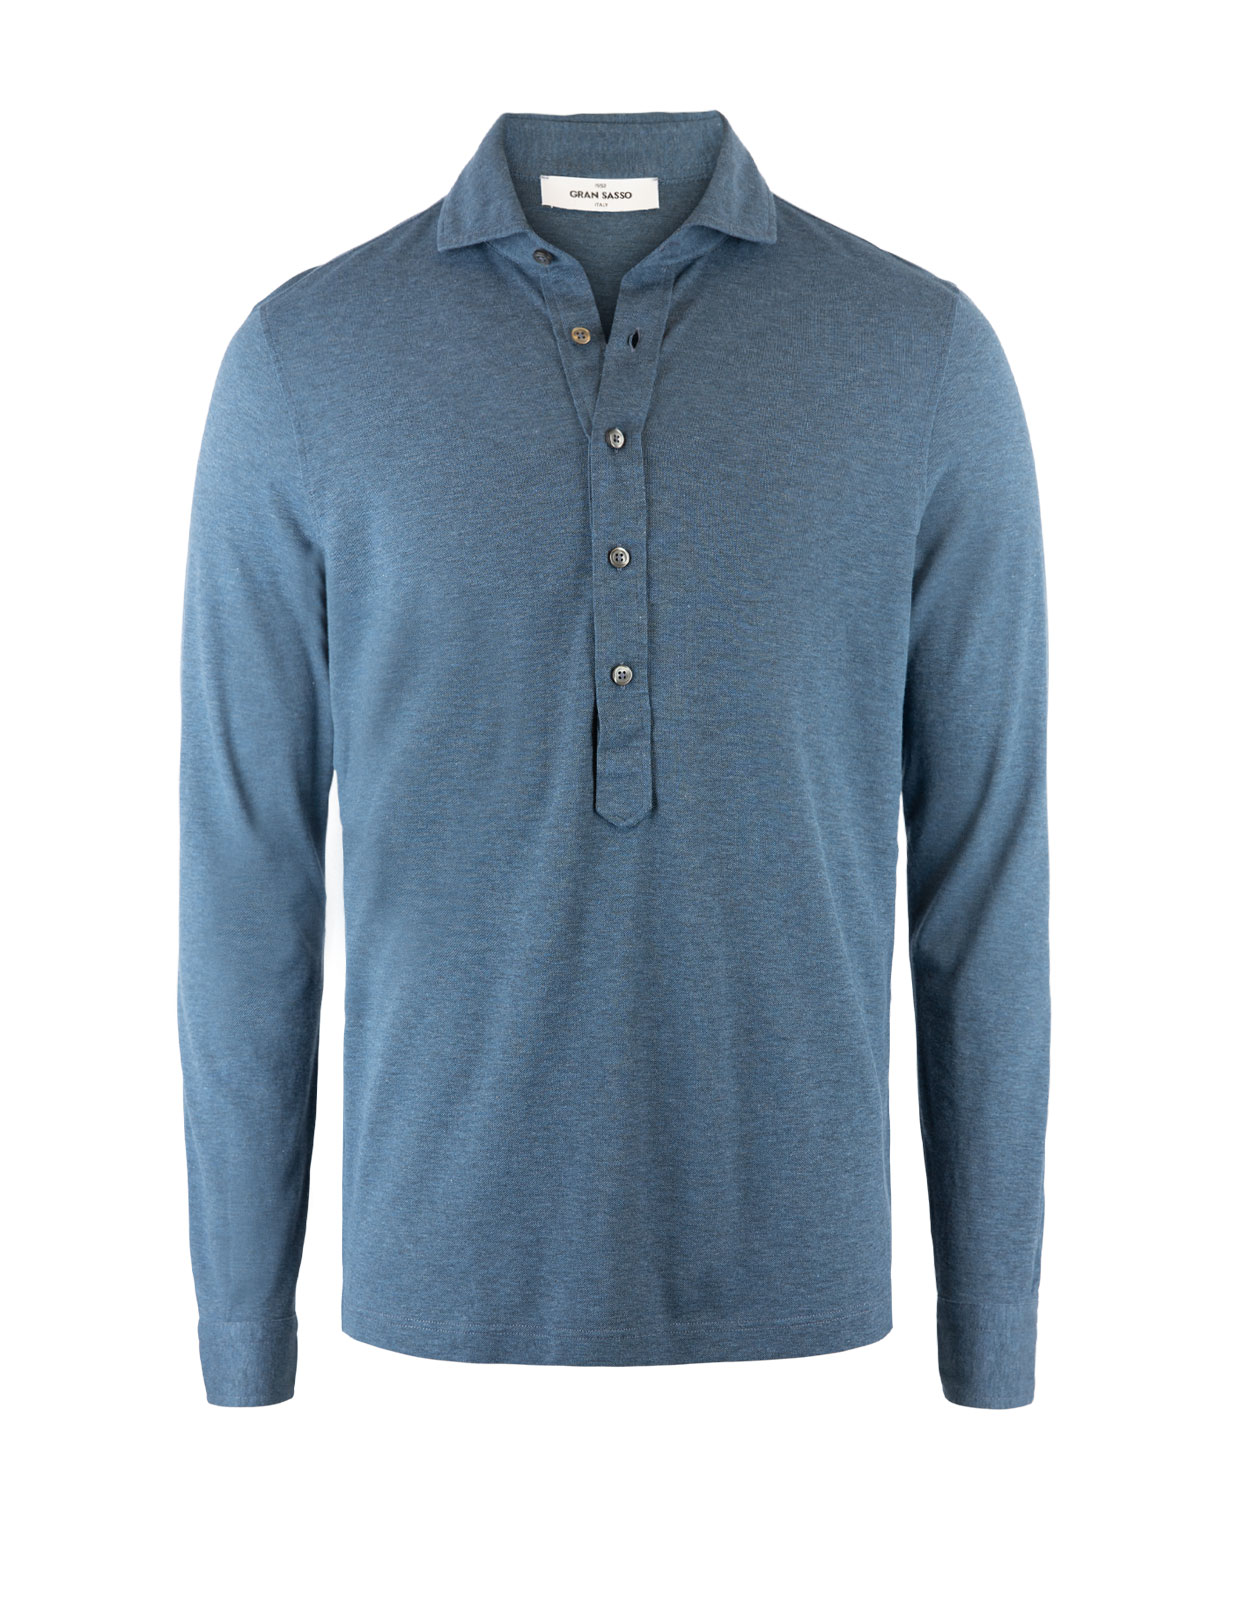 Jersey Popover Shirt Blue Melange Stl 54